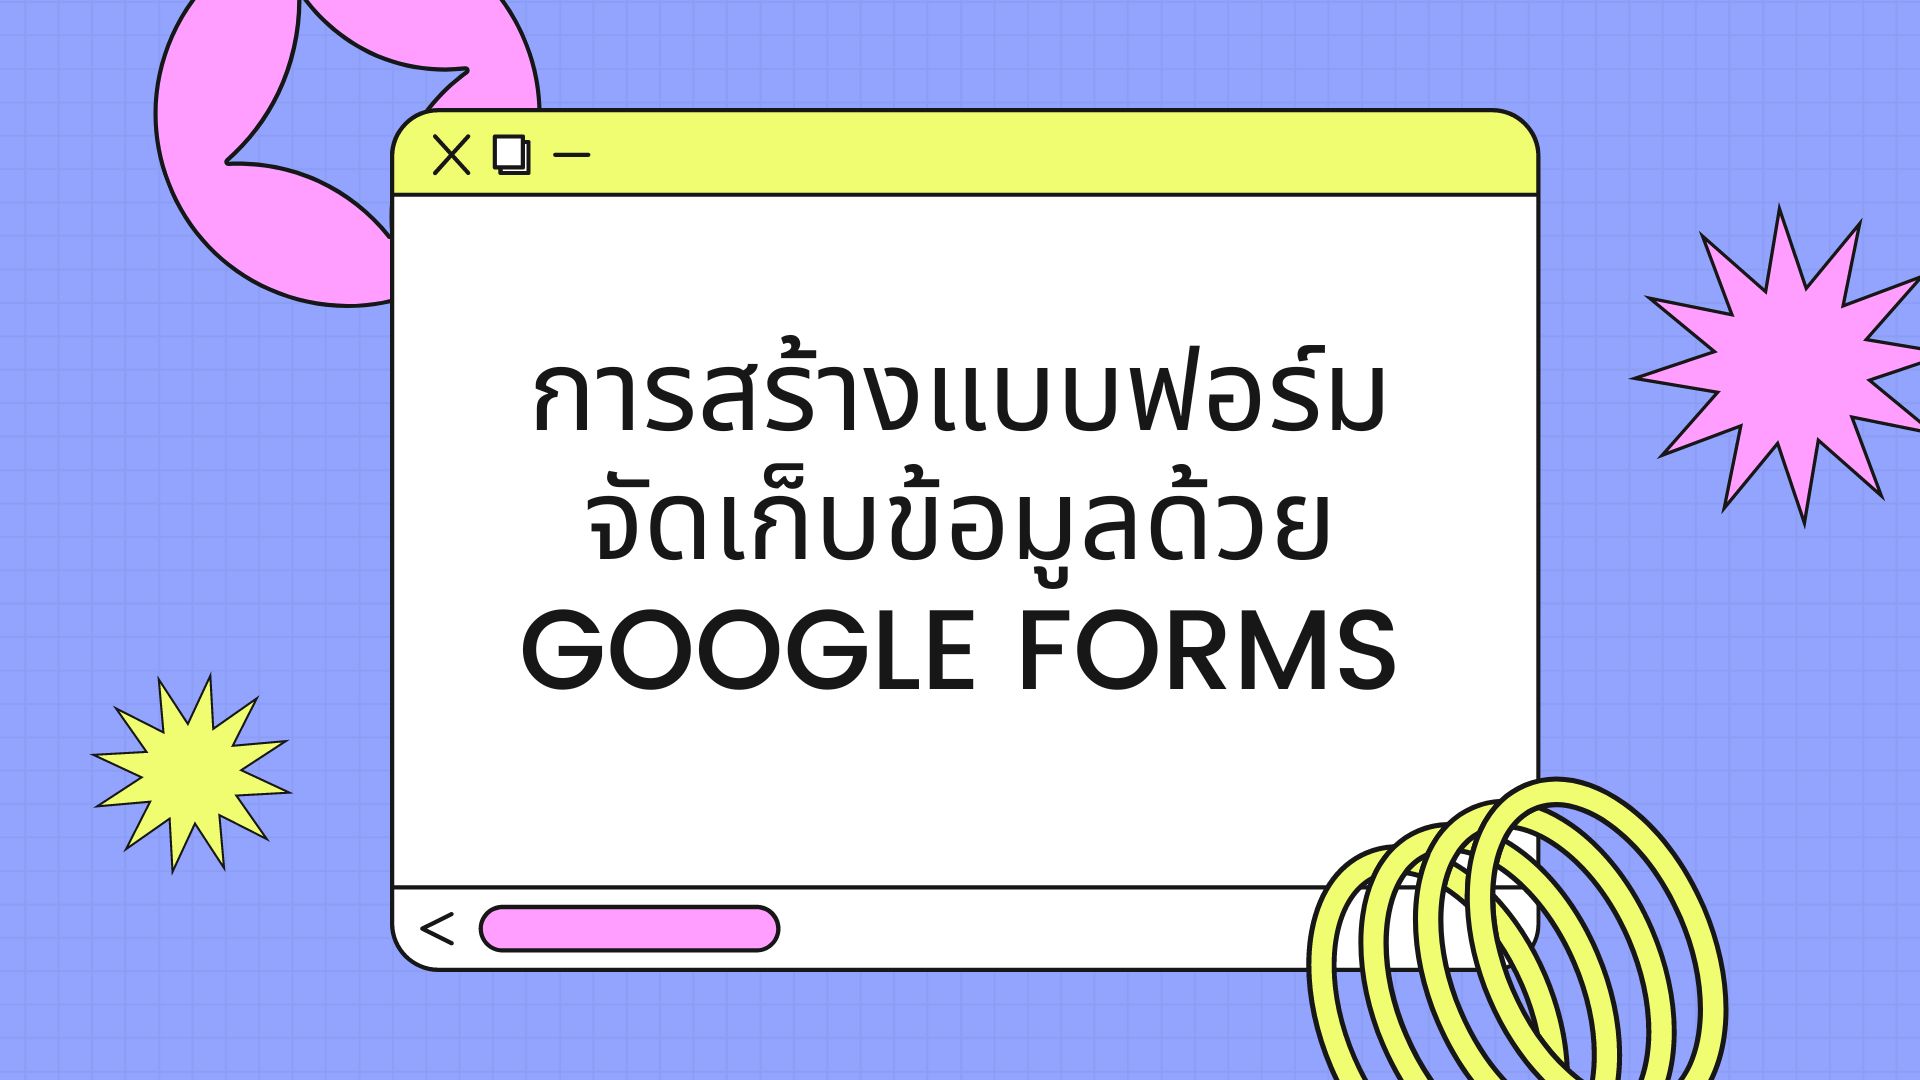 การสร้างแบบฟอร์มจัดเก็บข้อมูลด้วย Google Forms